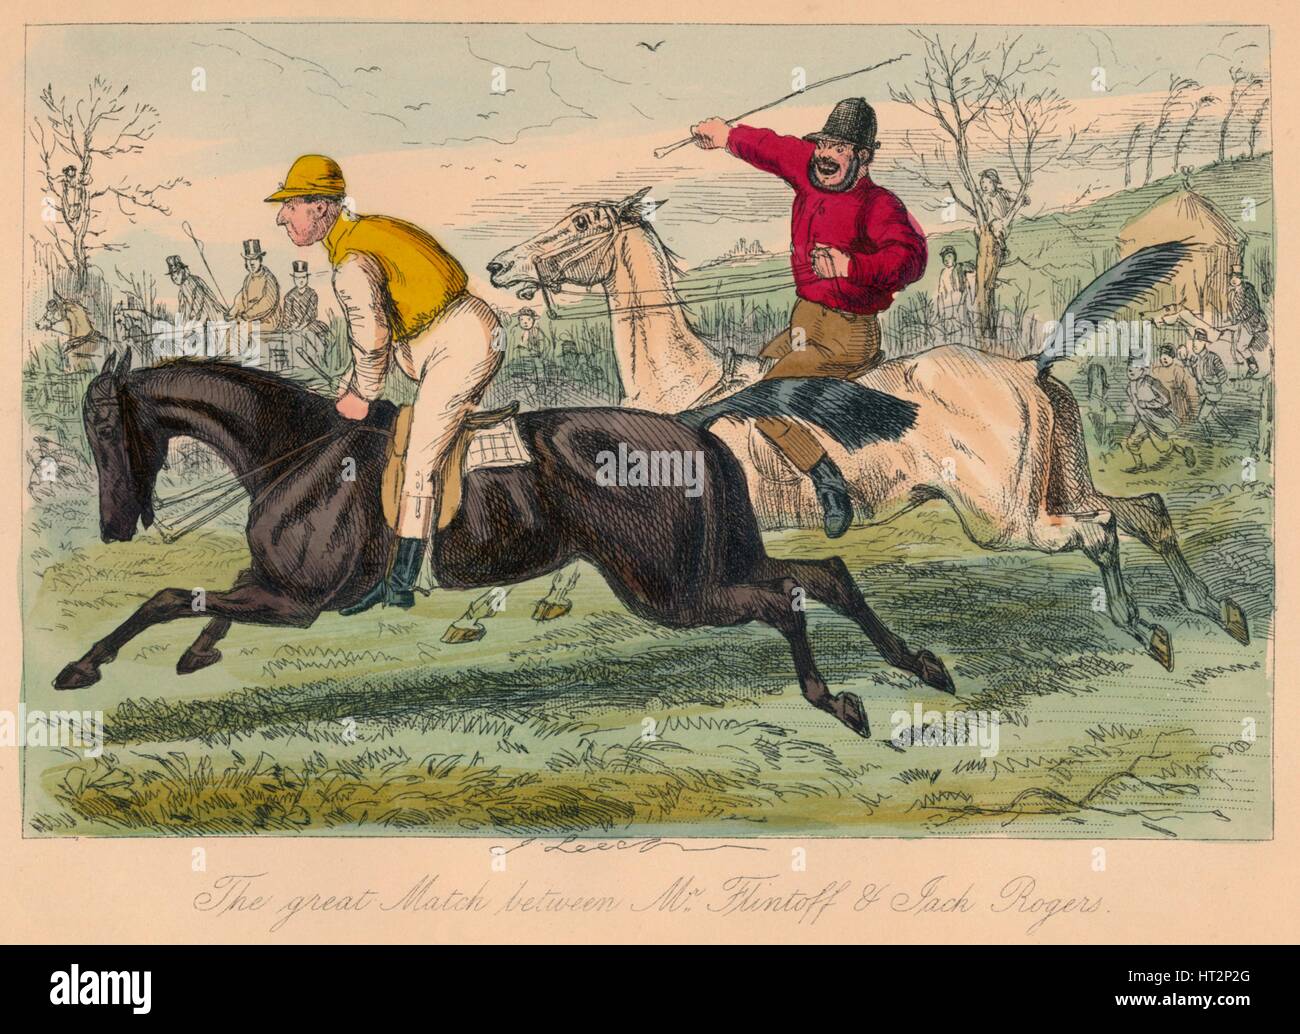 "The Great Match zwischen Mr Flintoff & -Jack Rogers', 1858. Künstler: John Leech. Stockfoto